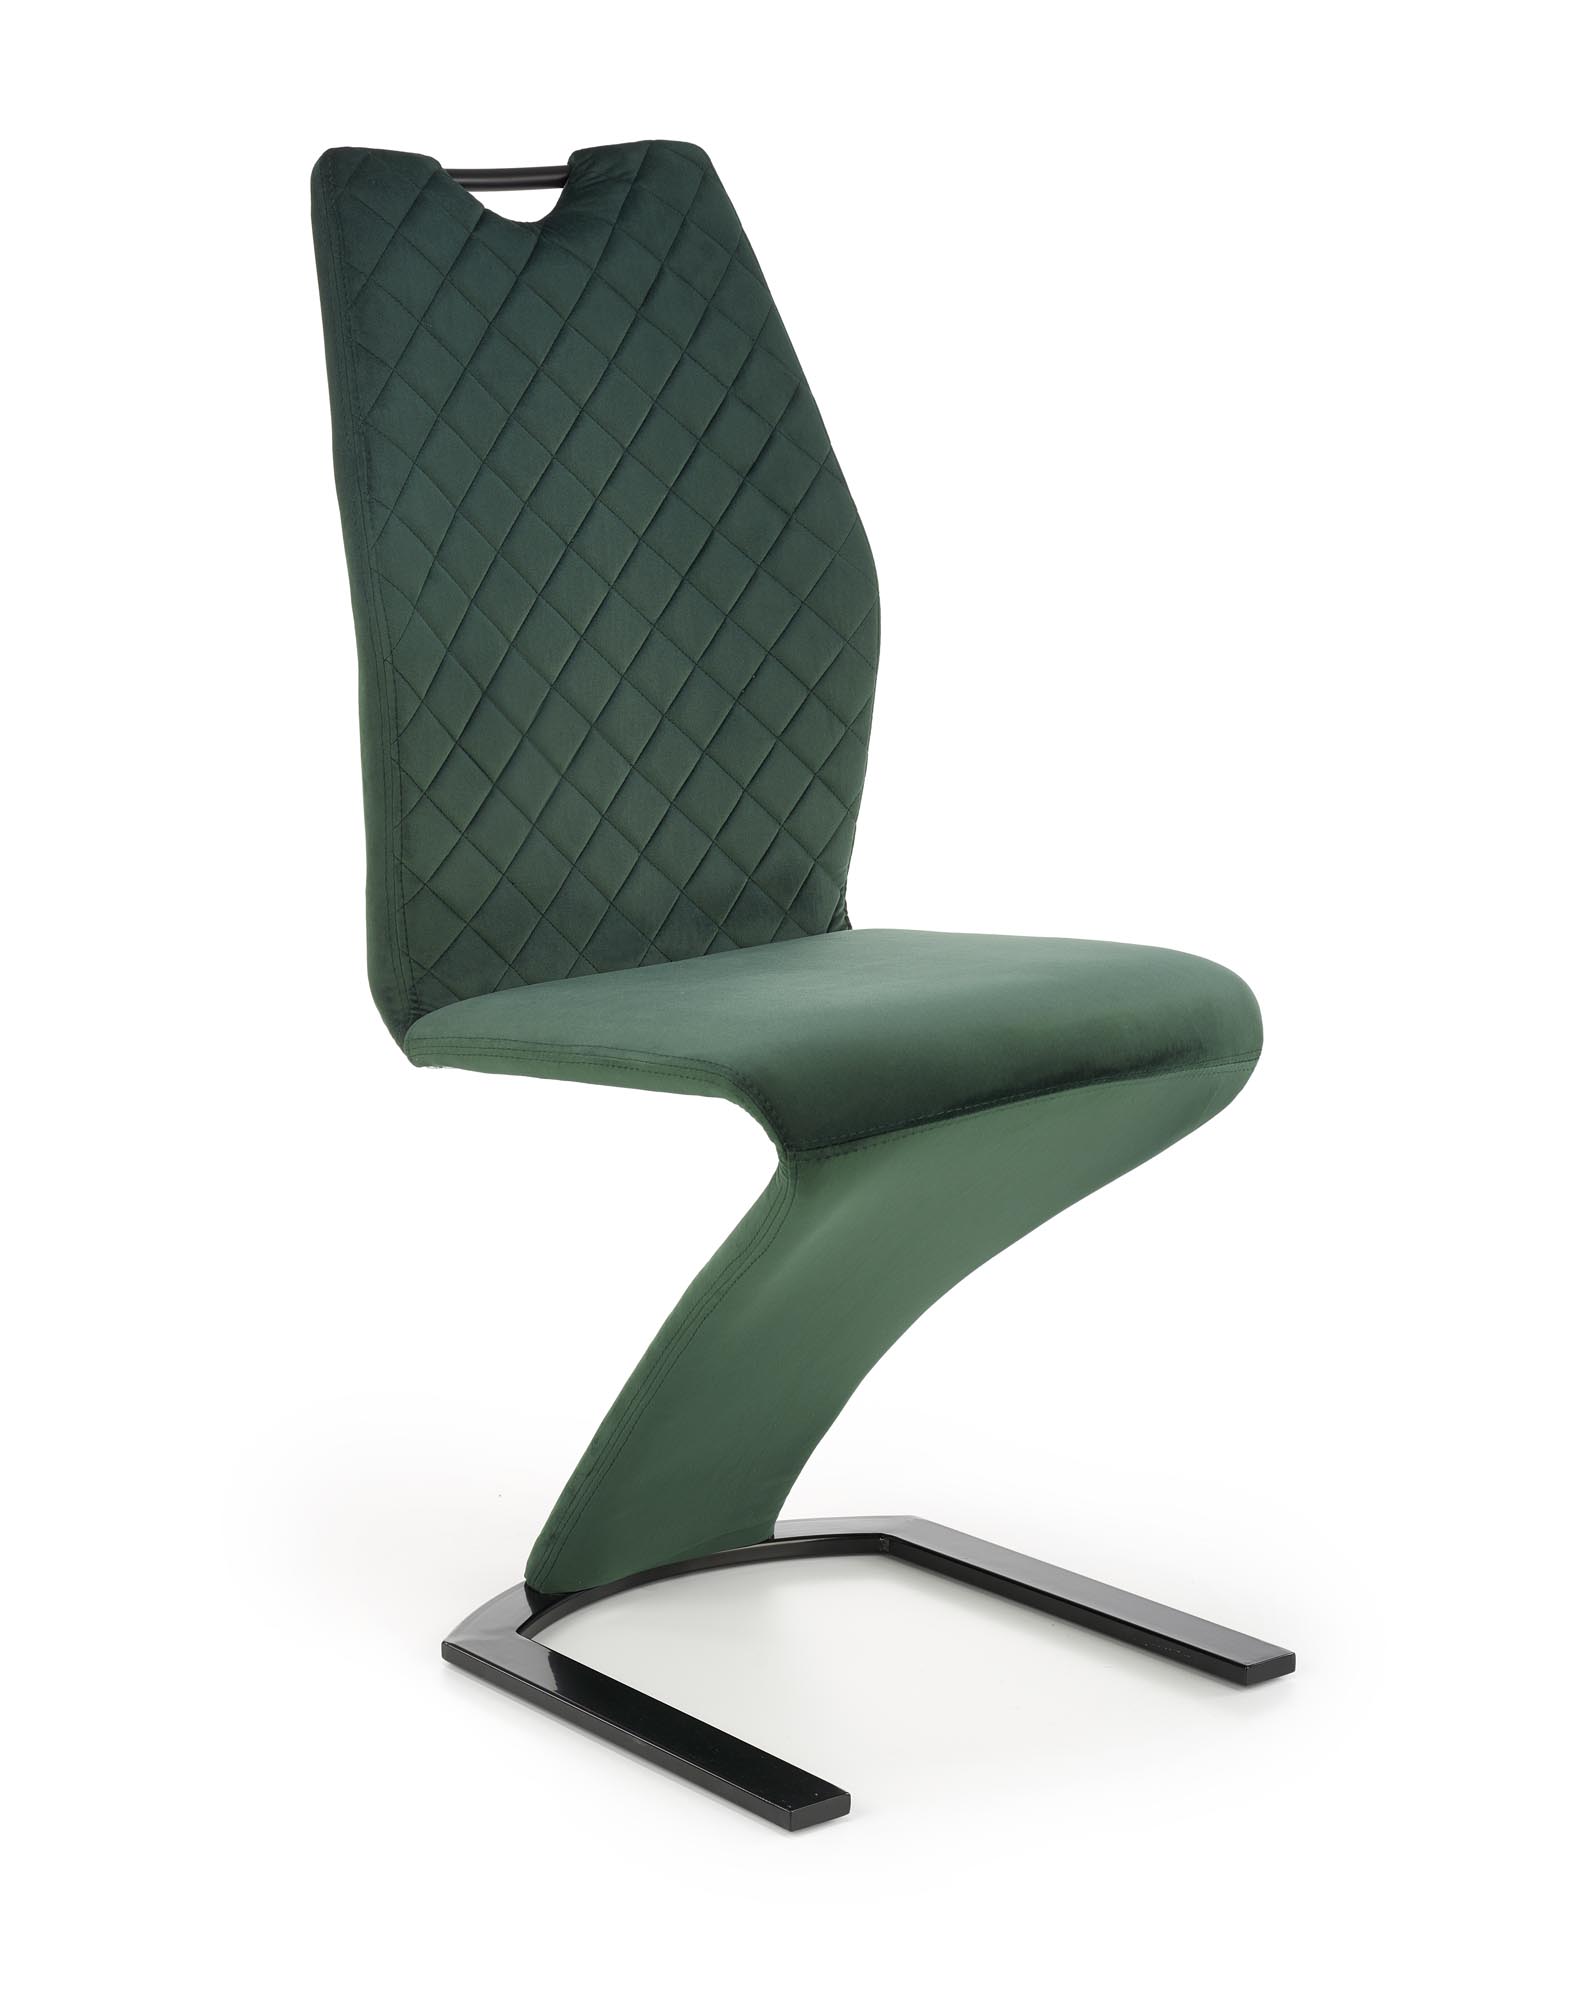 K442 krzesło ciemny zielony k442 krzesło ciemny zielony